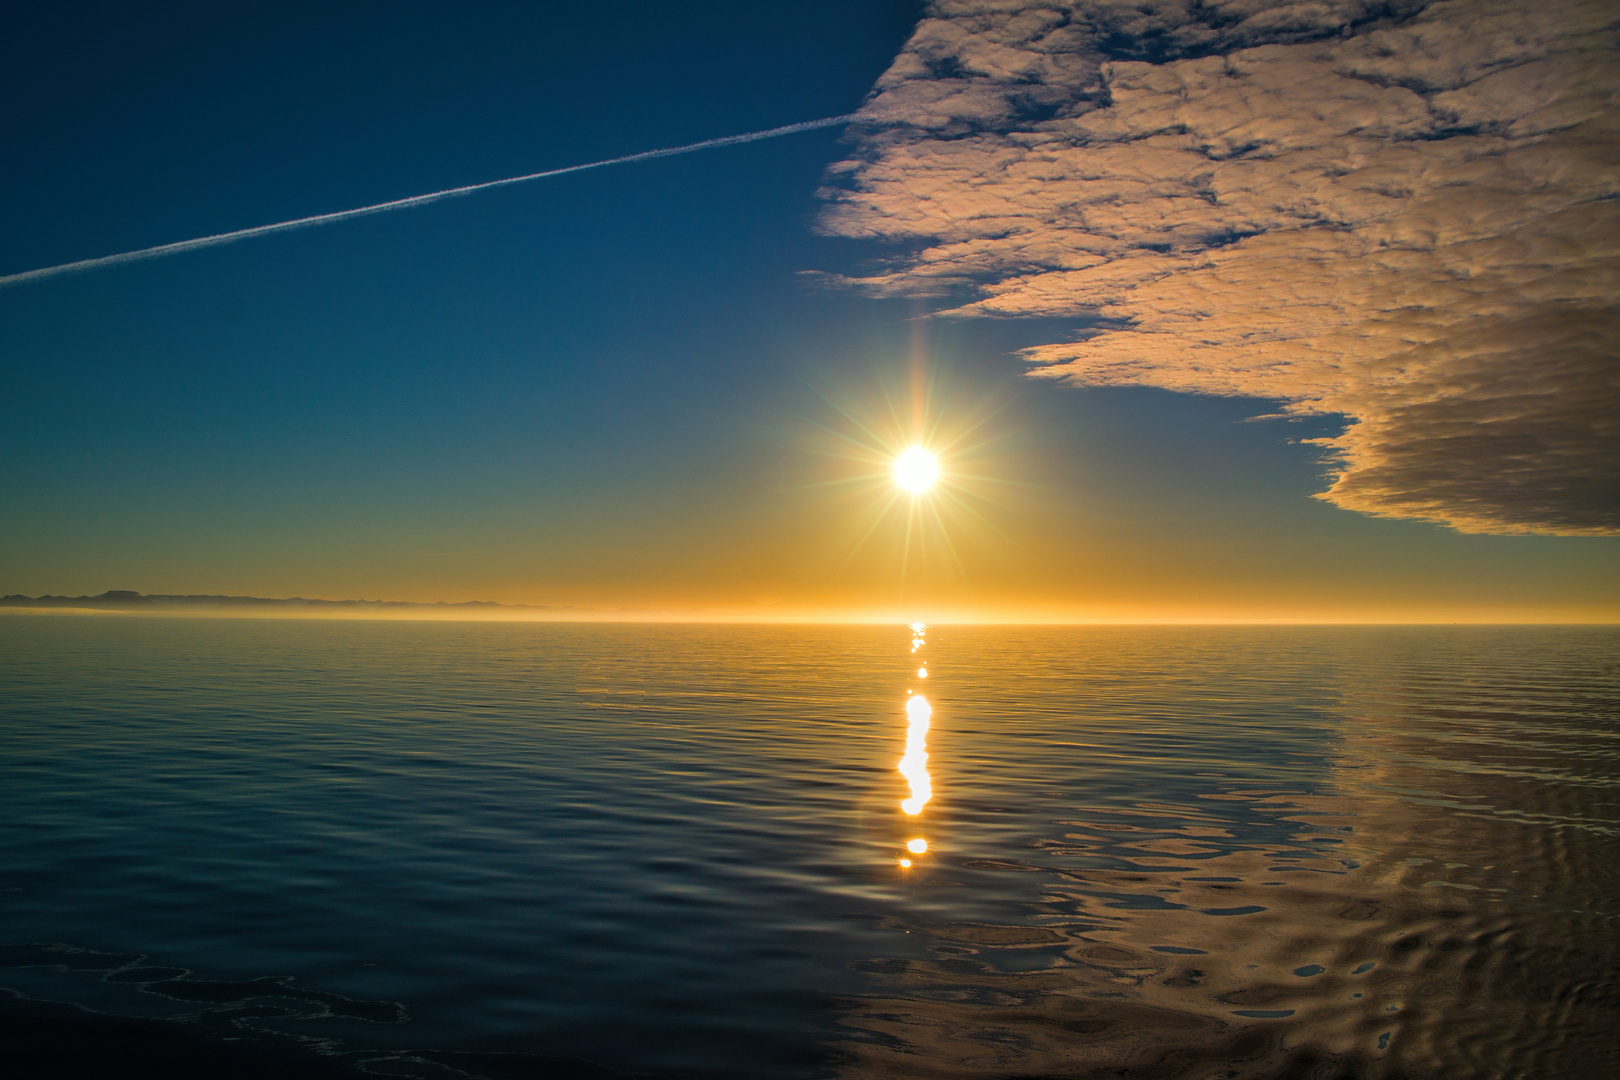 Midnight sun on the arctic sea